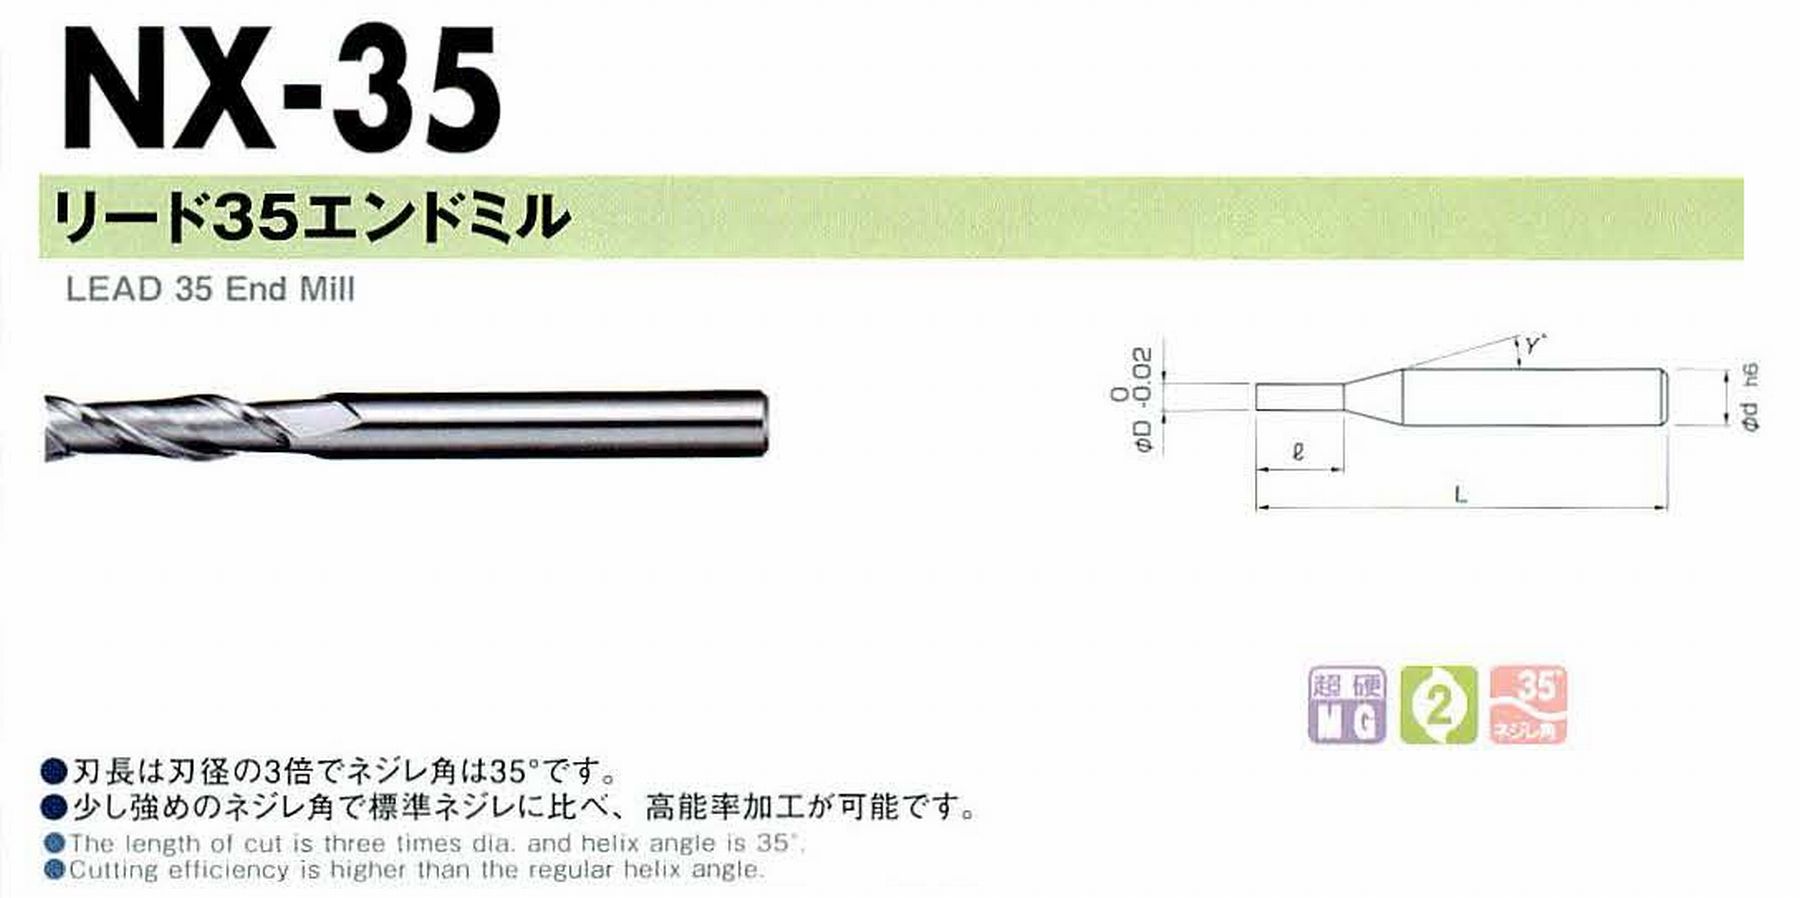 NS 日進工具 NX-35 リード35エンドミル コードNO．01-00035-00250 刃径2.5 刃長7.5 首角9° シャンク径4mm 全長45